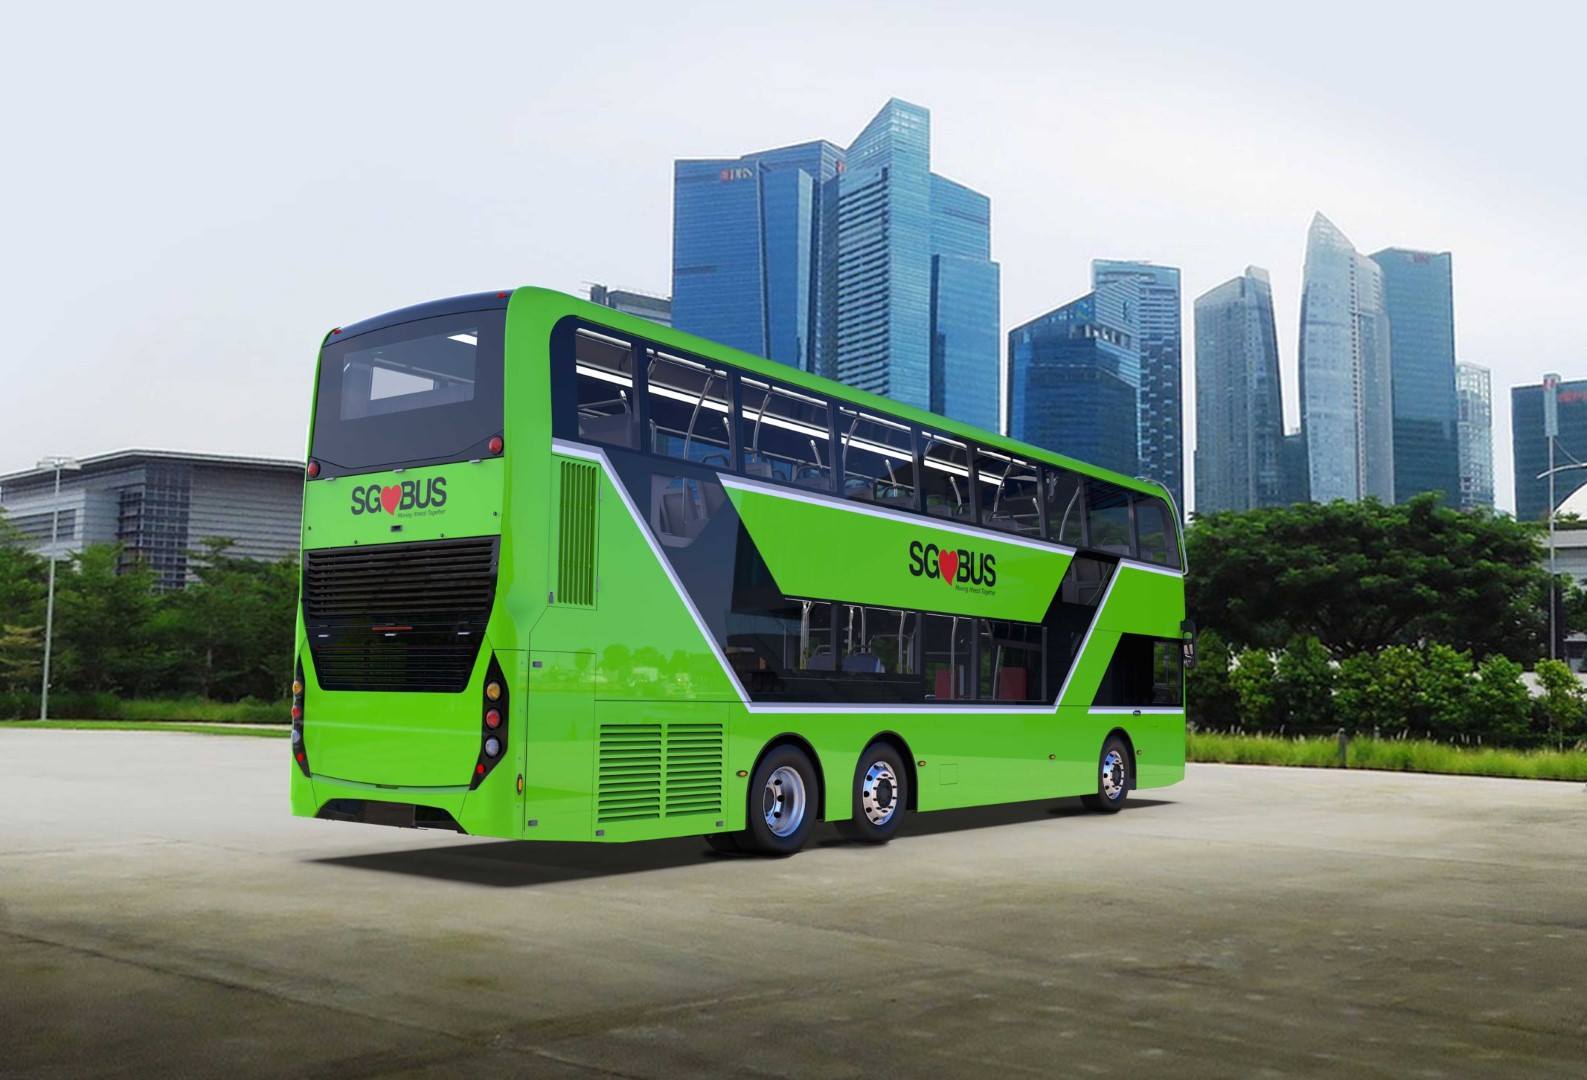 concept-rendering-of-adl-3-door-double-decker-bus-photo-adl-land